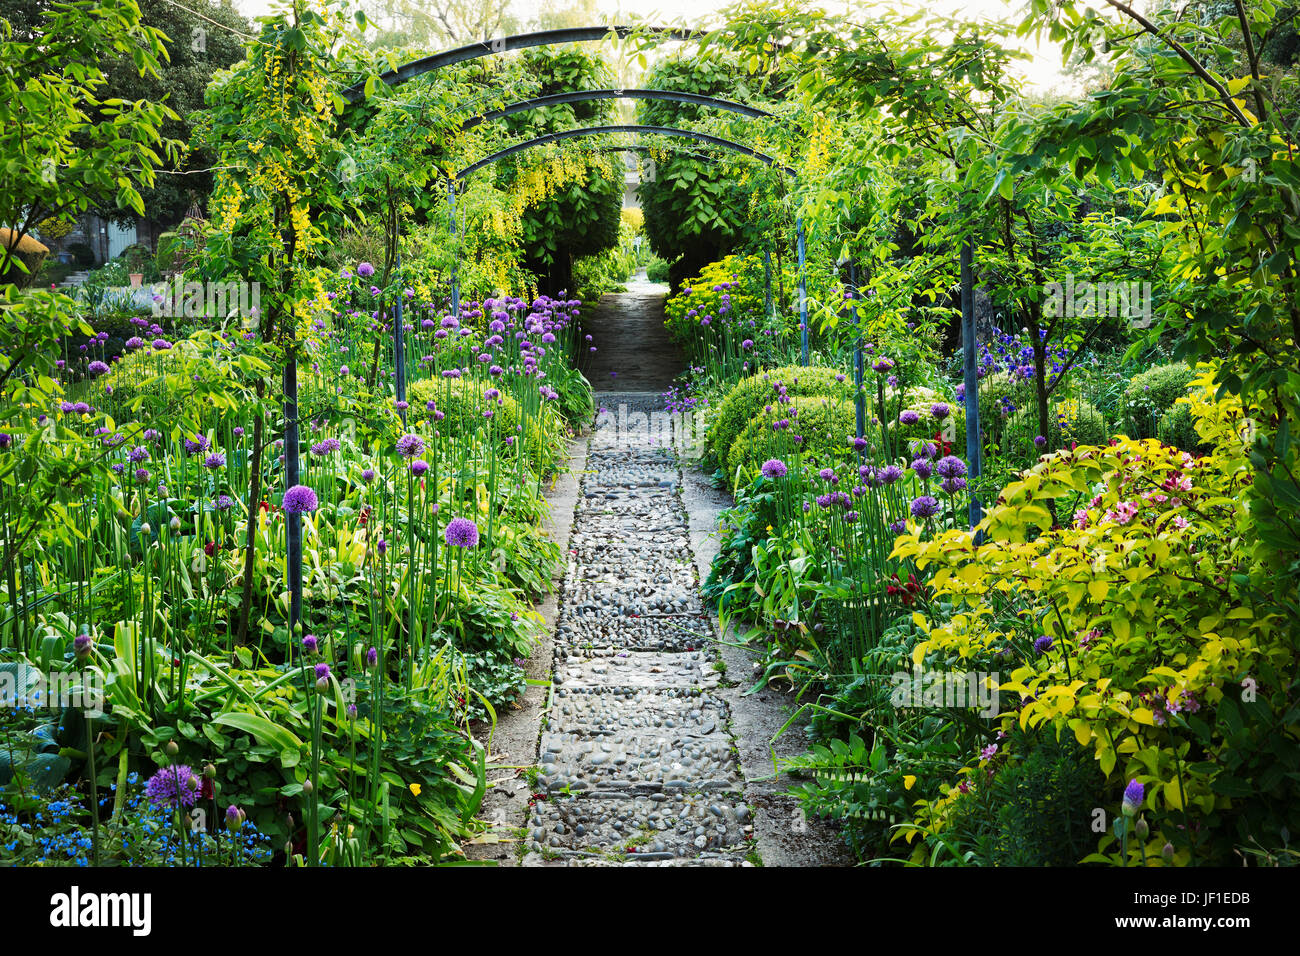 Les plantes et arbustes dans un jardin anglais, voie d'exposition et d'une pergola. En pierre de Cotswold, violet Floraison aliums. Glouchestershire jardins de l'hôtel Banque D'Images